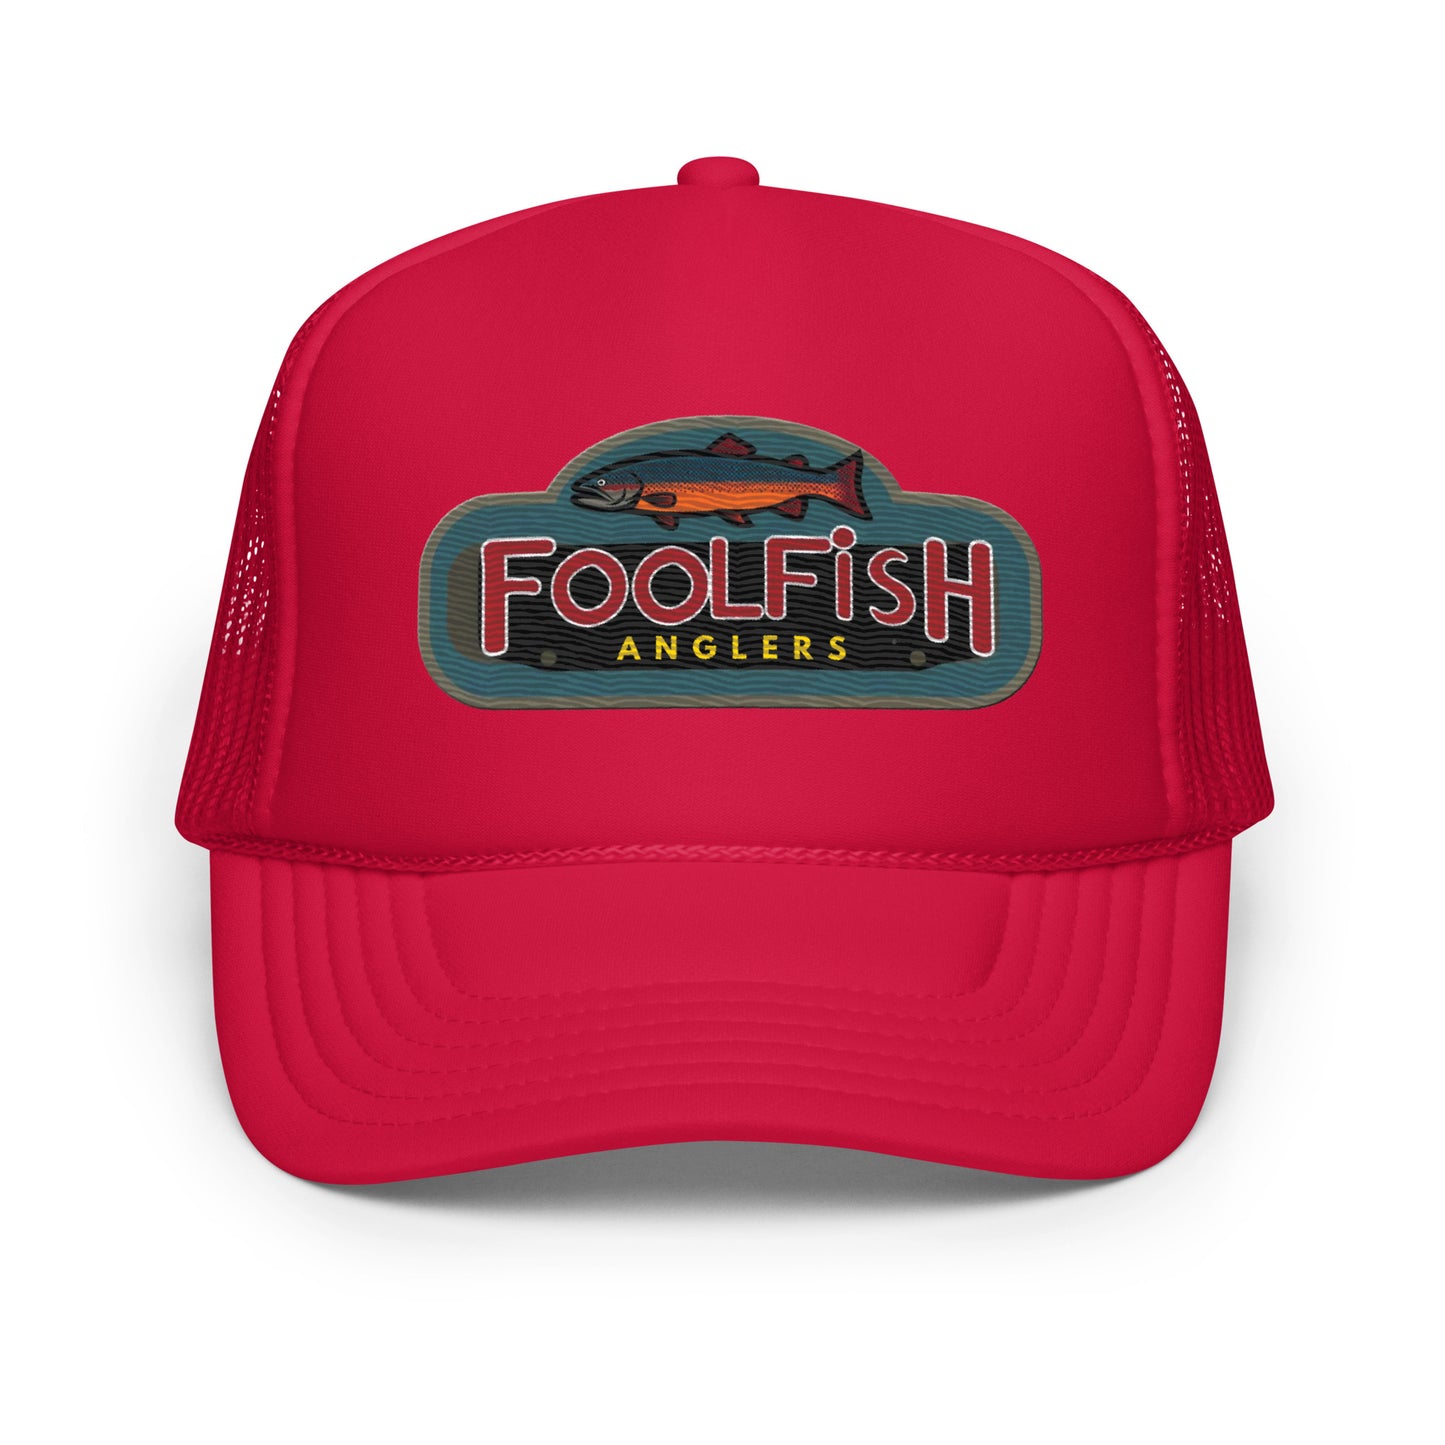 Foolfish - Classic Trucker Cap